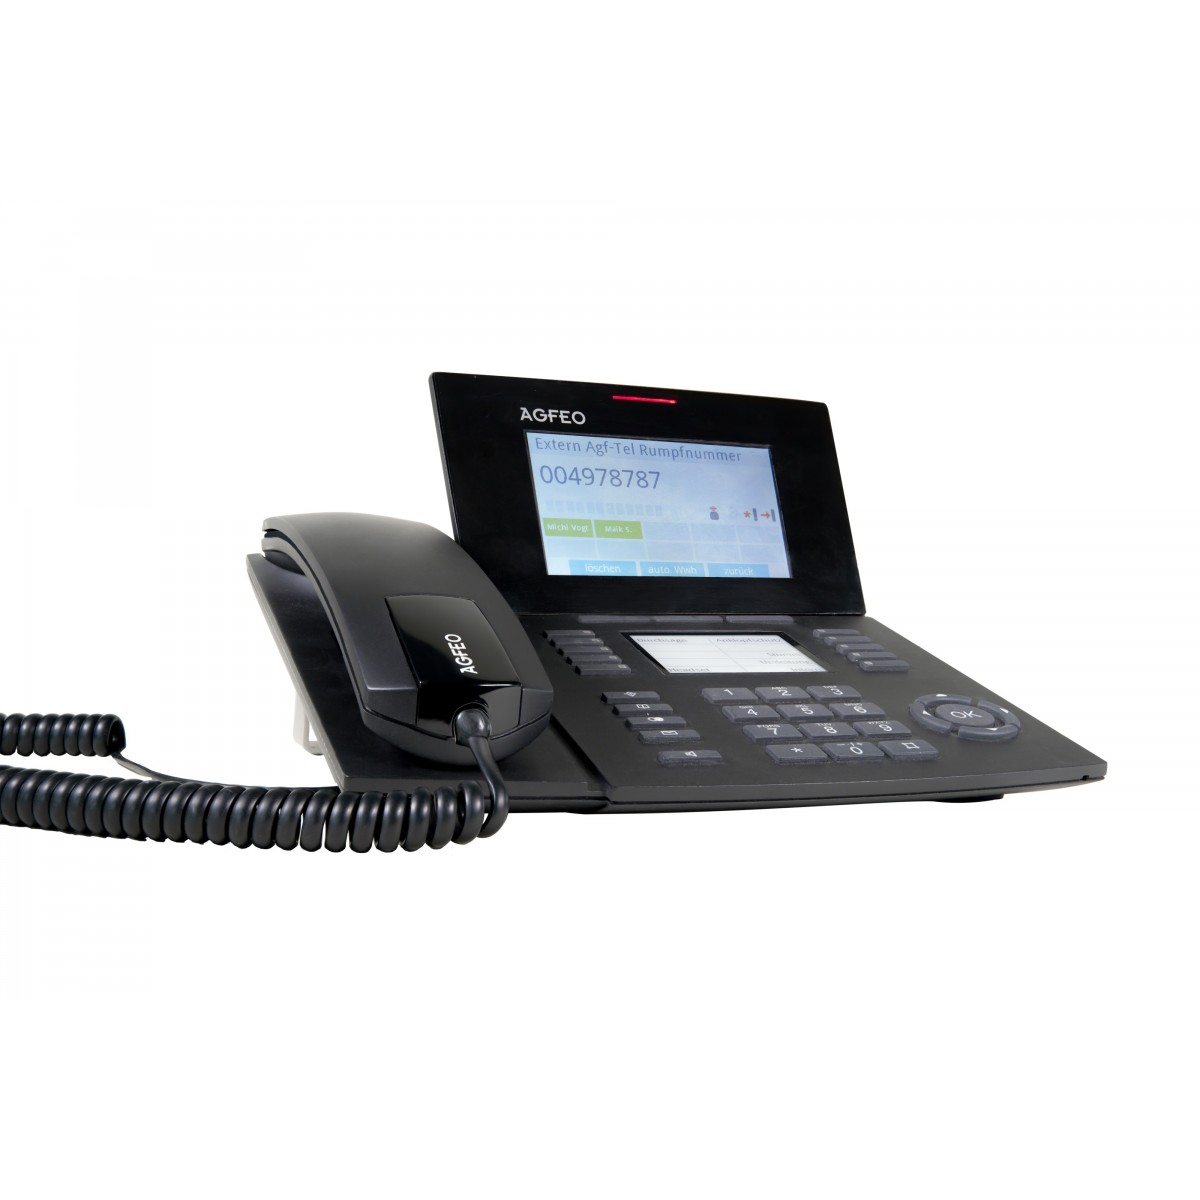 AGFEO ST 56 IP - IP-Telefon - Schwarz - Kabelgebundenes Mobilteil - 5000 Eintragungen - 235 mm - 210 mm